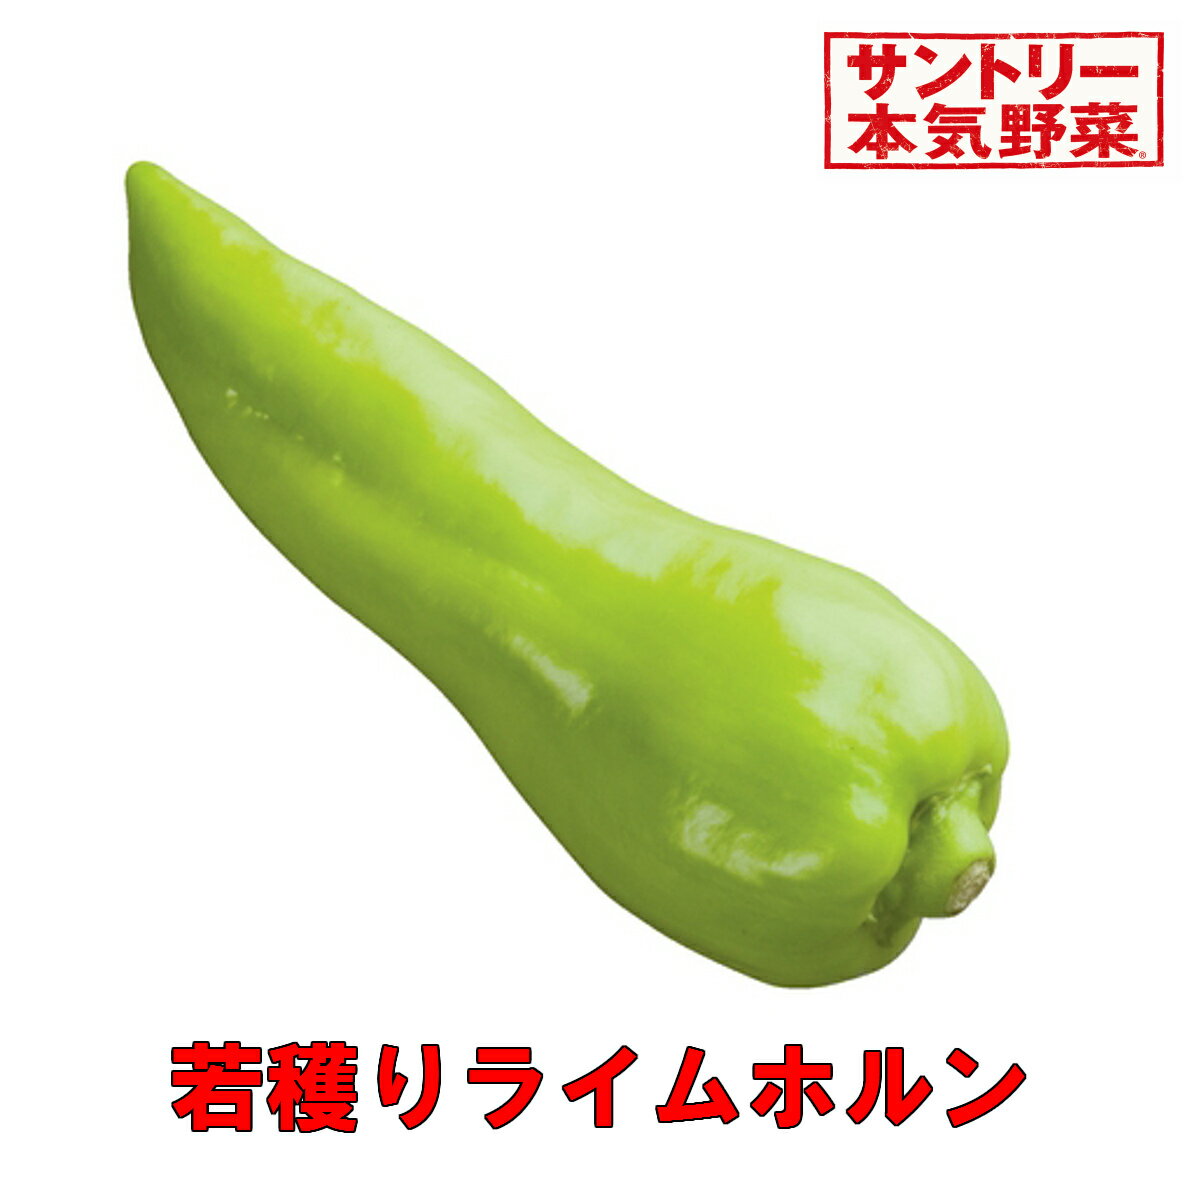 若穫りライムホルン 【サントリー本気野菜】3号サイズ 1ポット